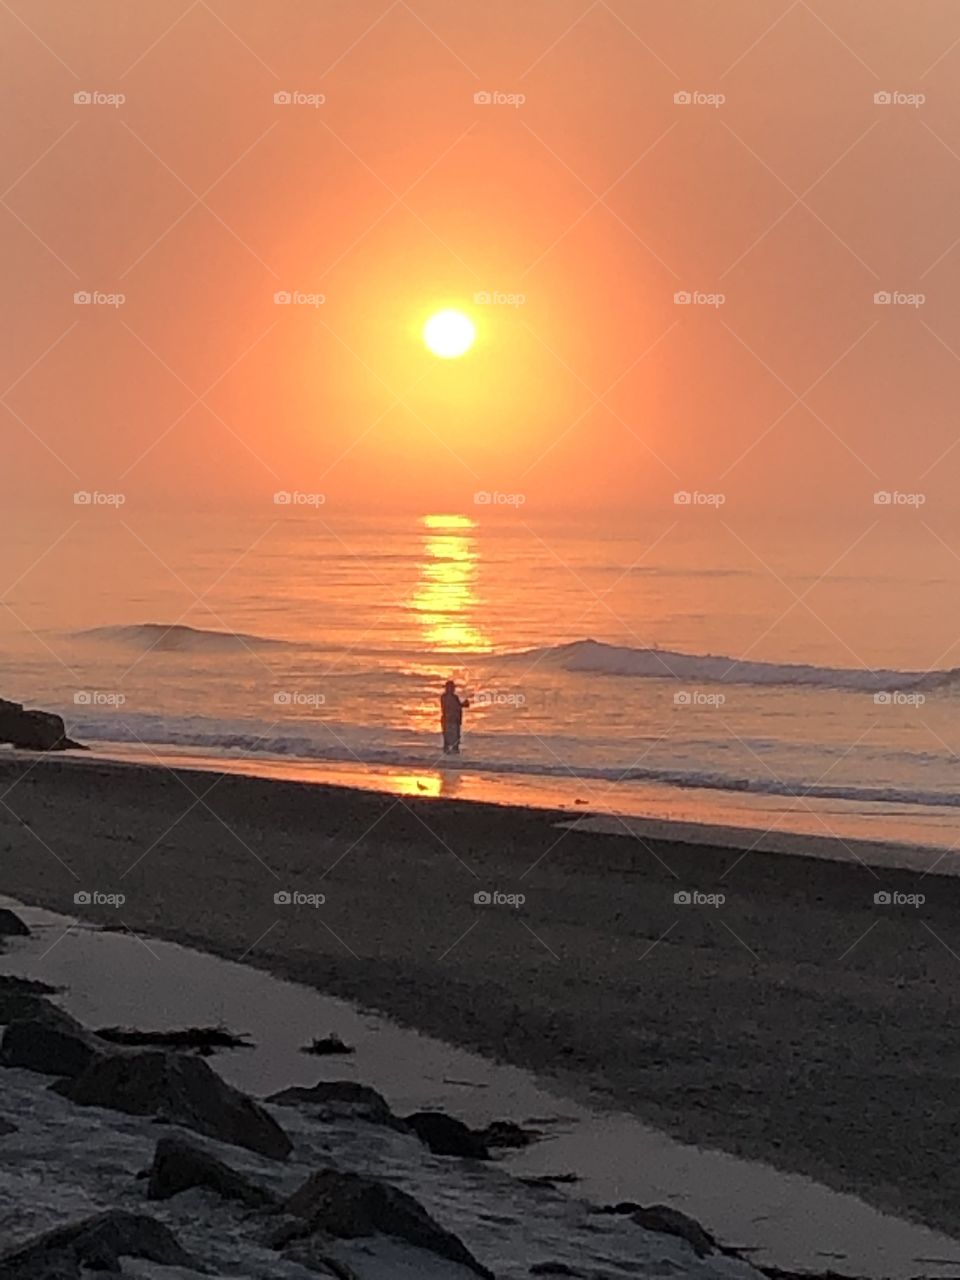 Sunrise at beach